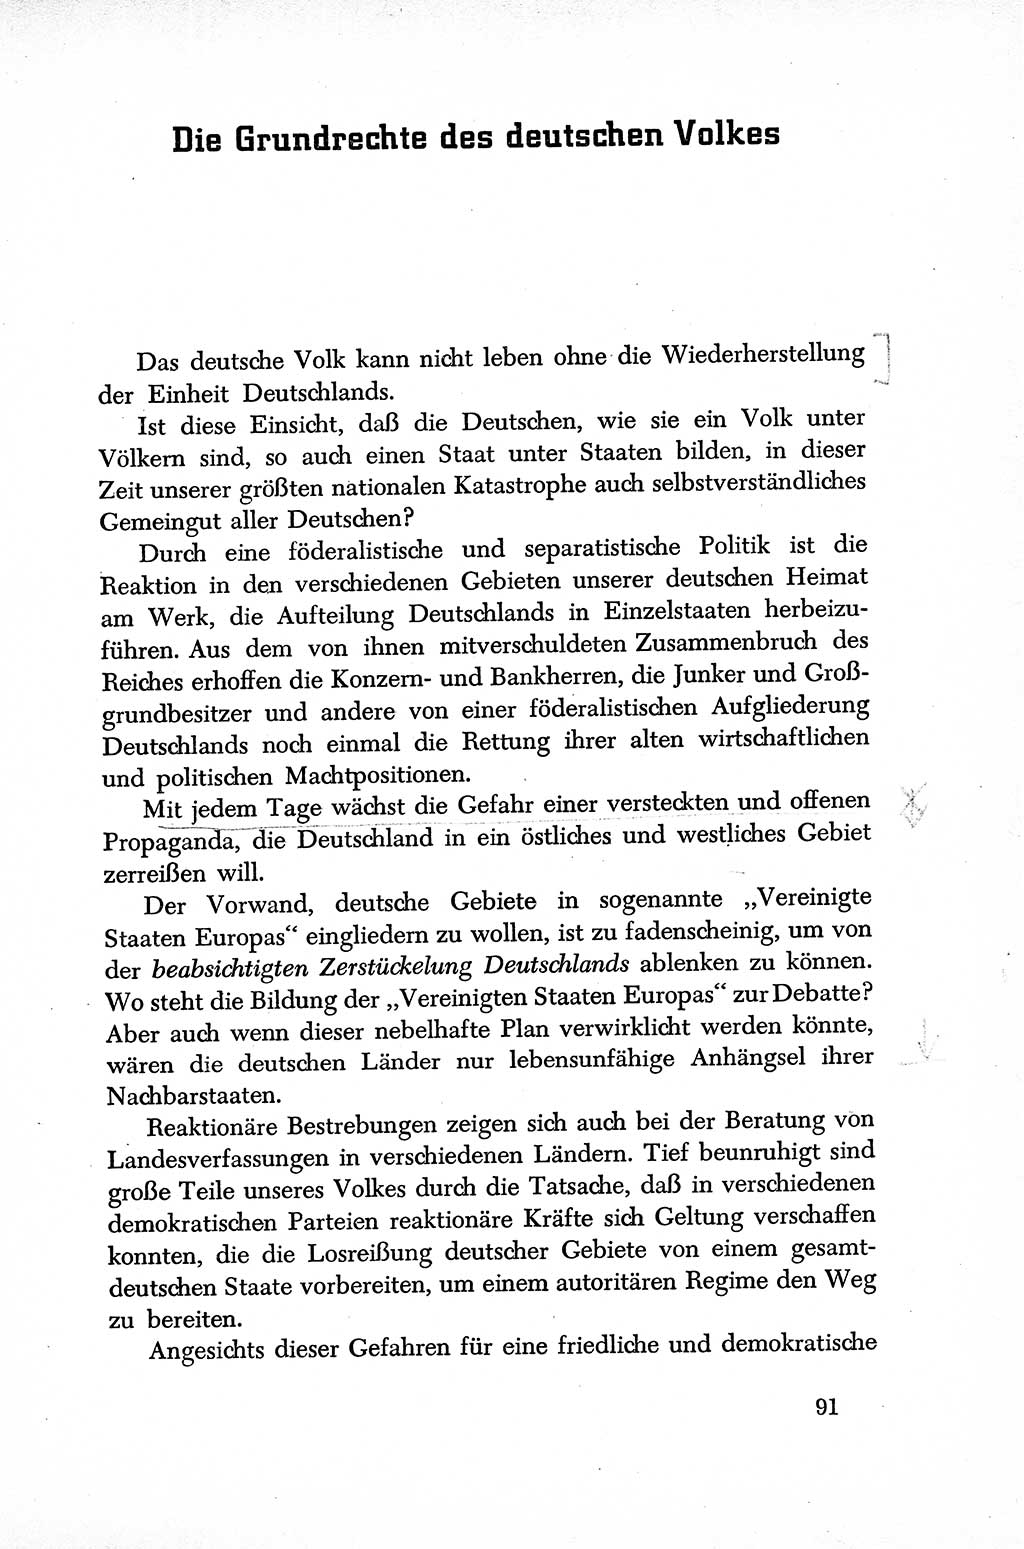 Dokumente der Sozialistischen Einheitspartei Deutschlands (SED) [Sowjetische Besatzungszone (SBZ) Deutschlands] 1946-1948, Seite 91 (Dok. SED SBZ Dtl. 1946-1948, S. 91)